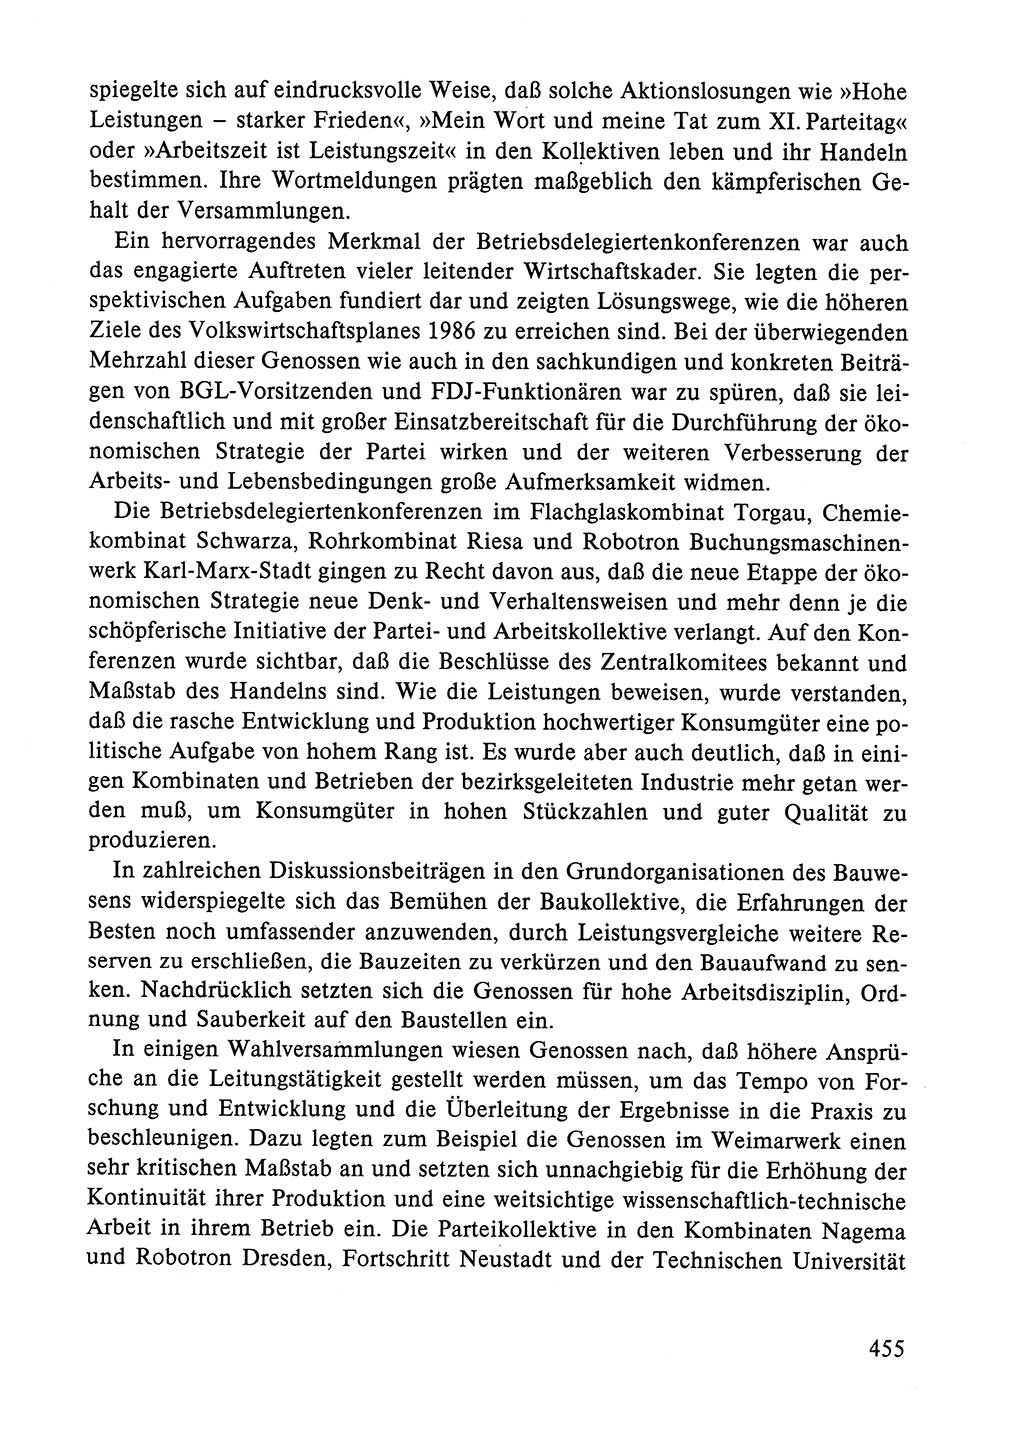 Dokumente der Sozialistischen Einheitspartei Deutschlands (SED) [Deutsche Demokratische Republik (DDR)] 1984-1985, Seite 455 (Dok. SED DDR 1984-1985, S. 455)